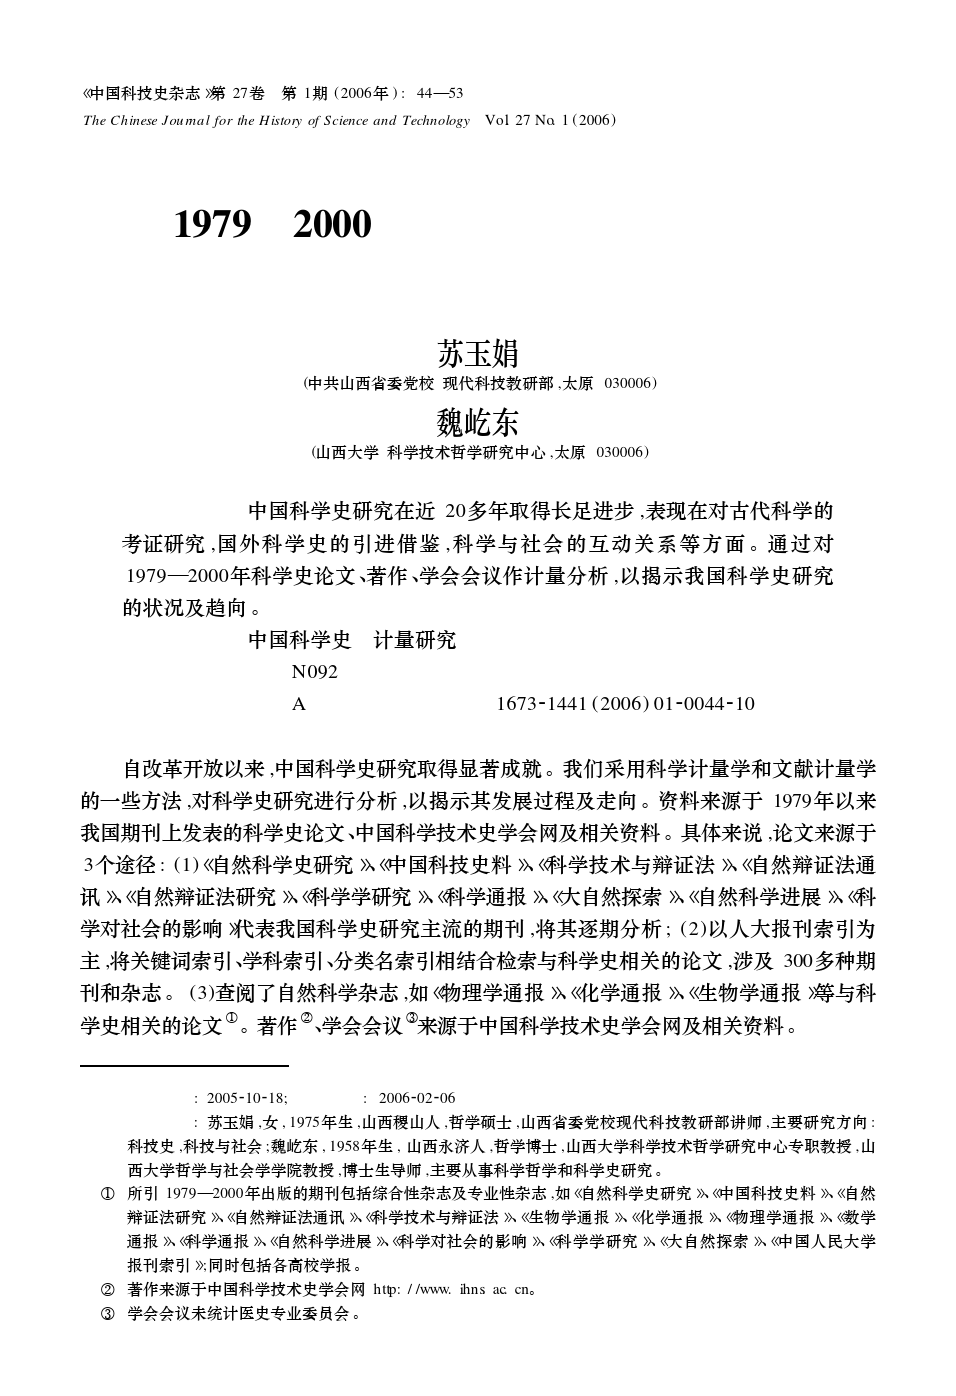 1979—2000年中国科学史研究状况